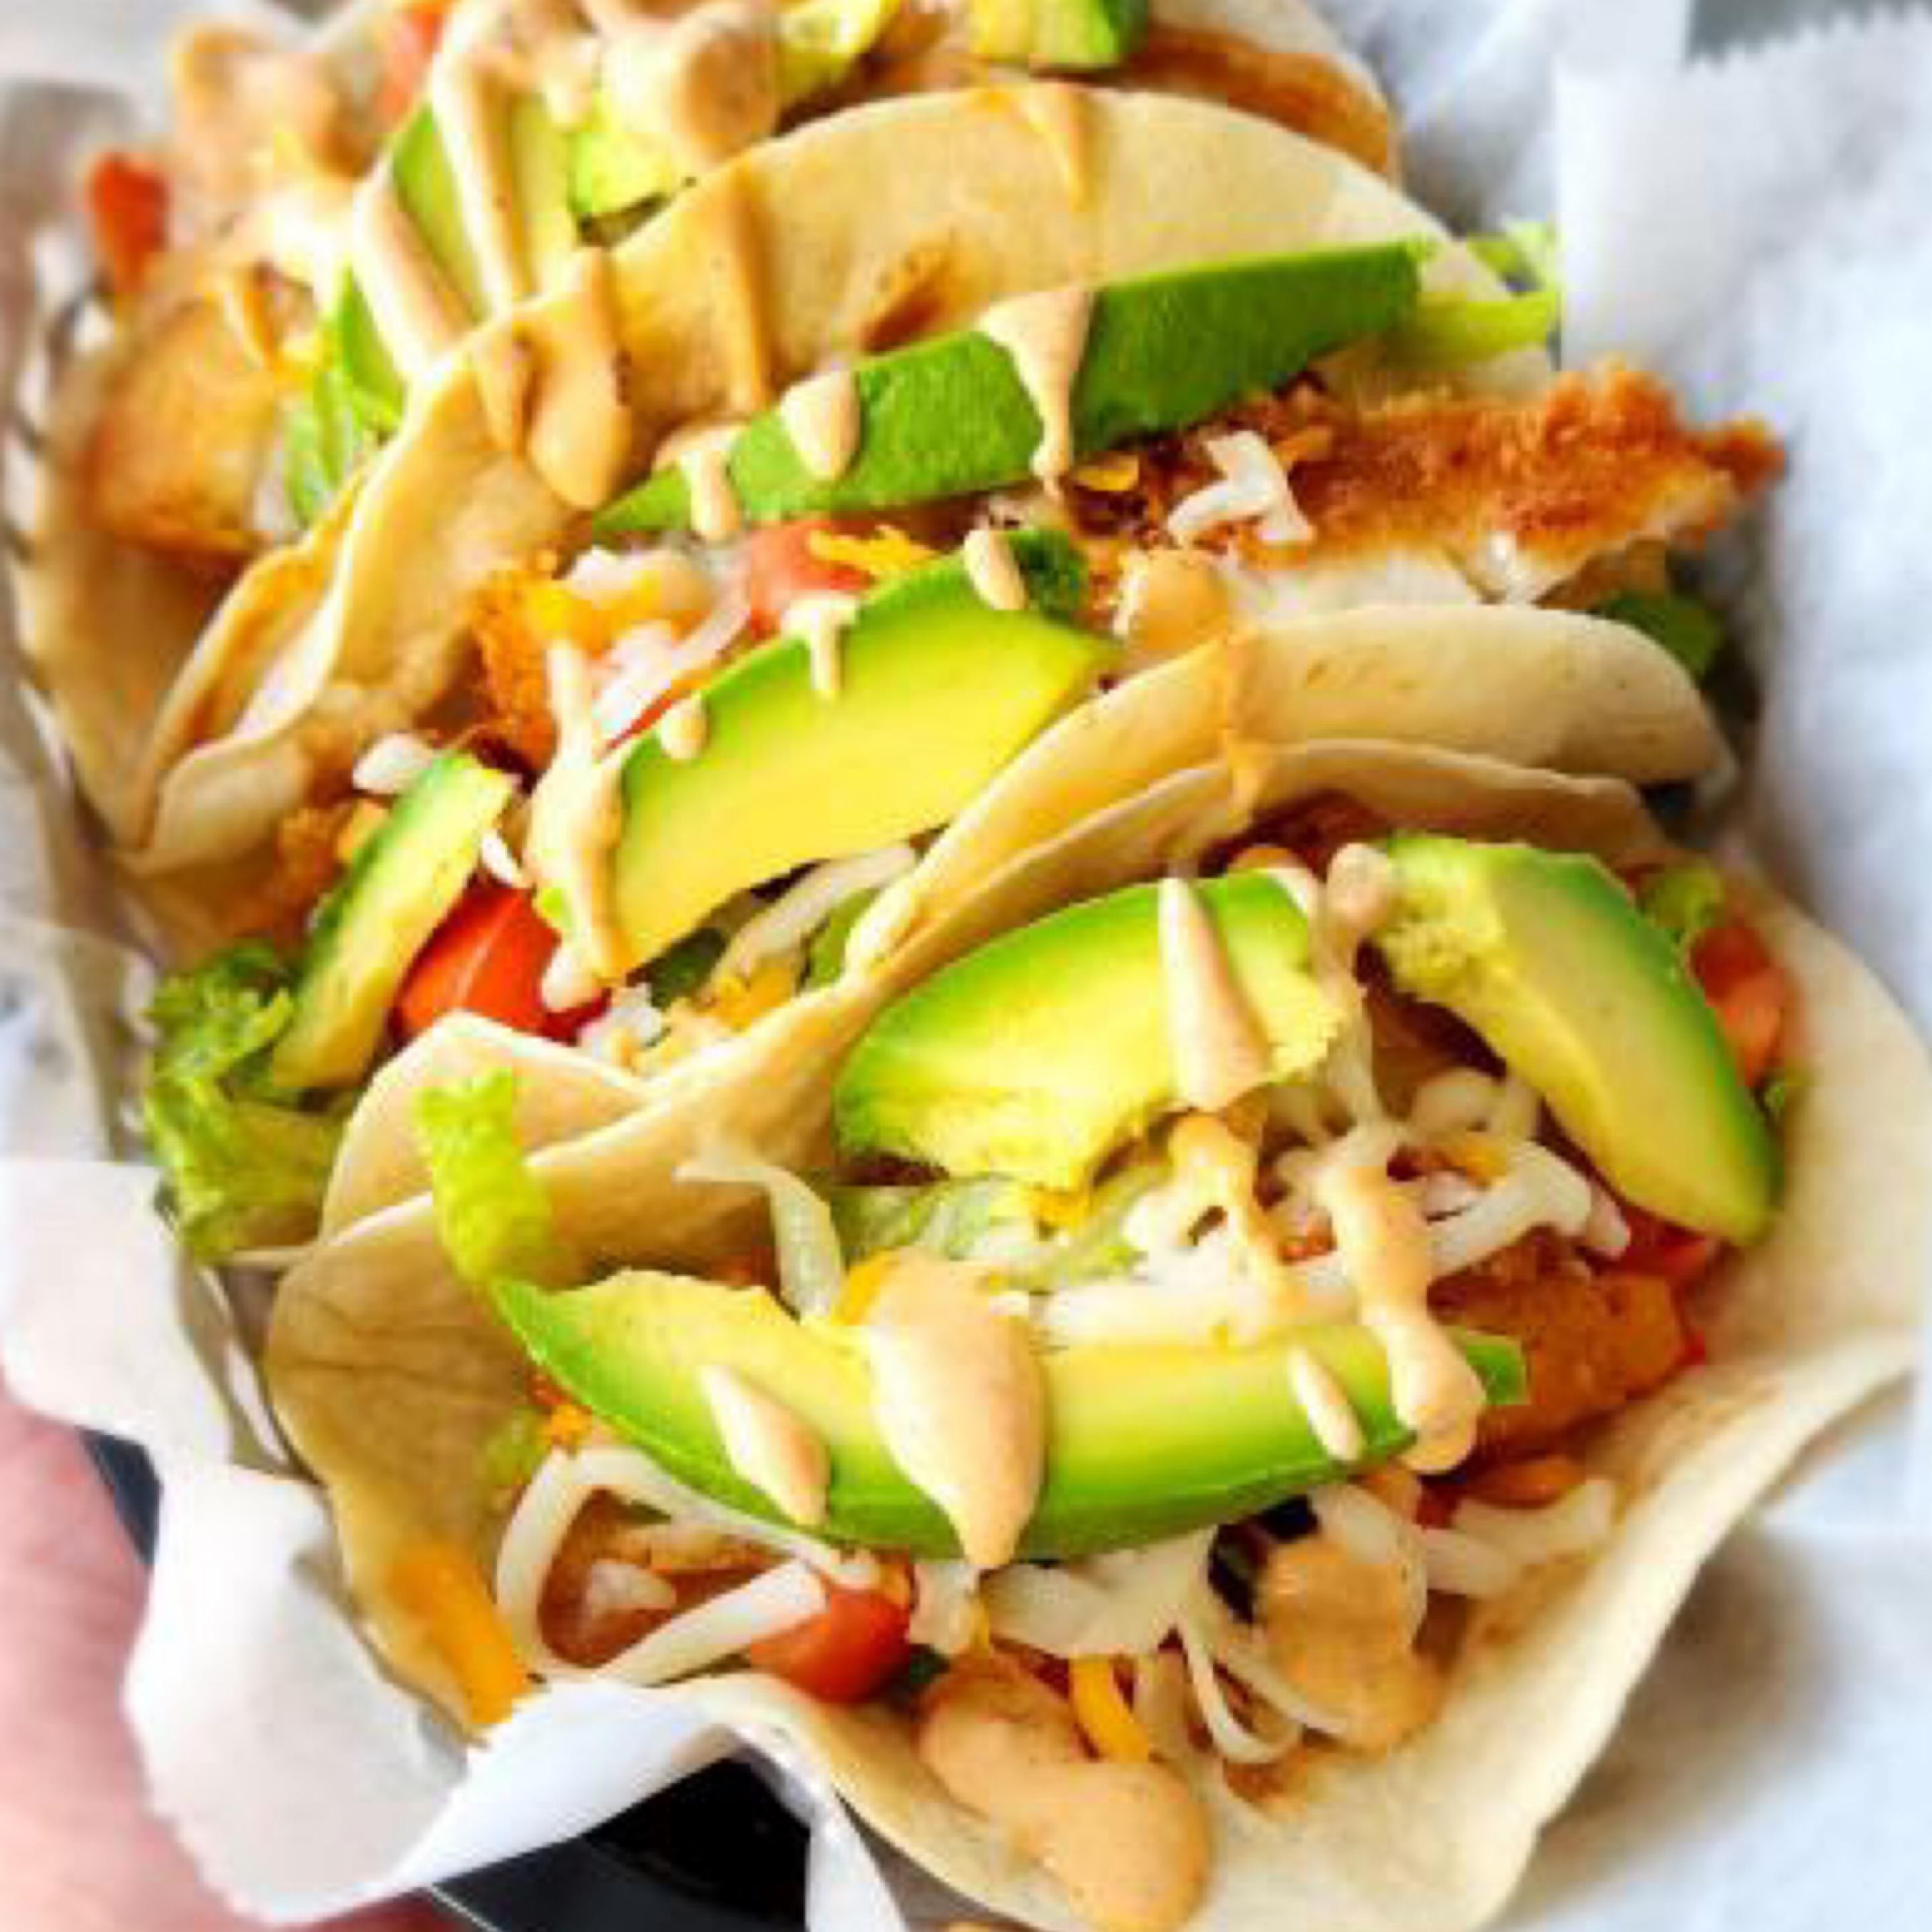 Fish Tacos (2 per order)